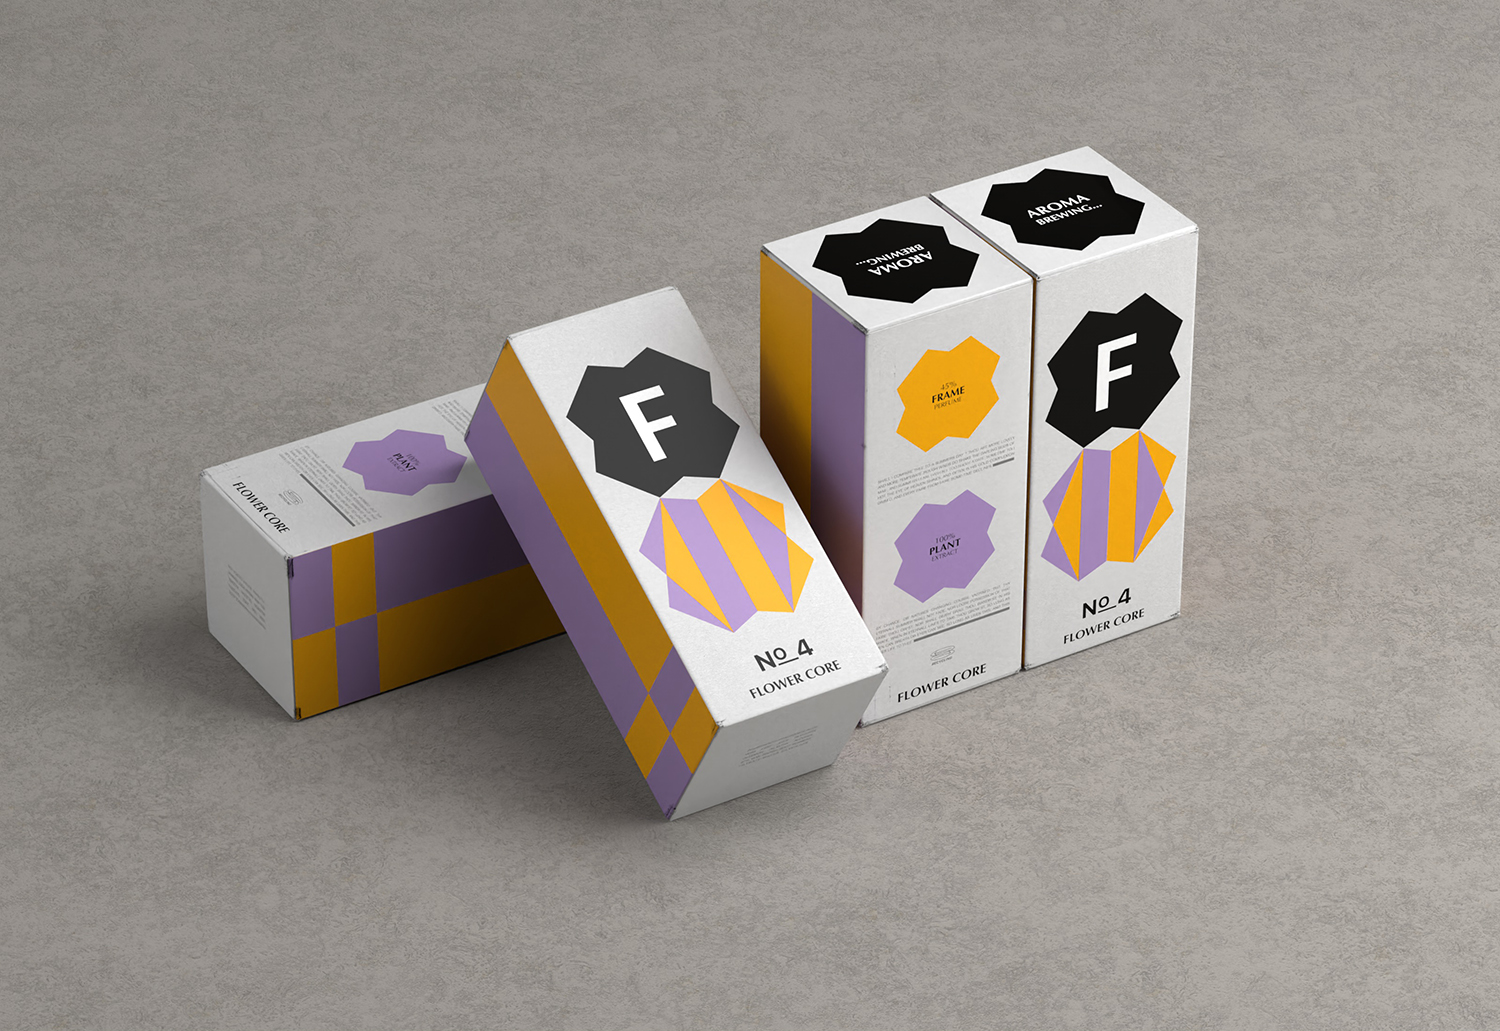 香水包装盒设计 F-core香水产品包装设计欣赏